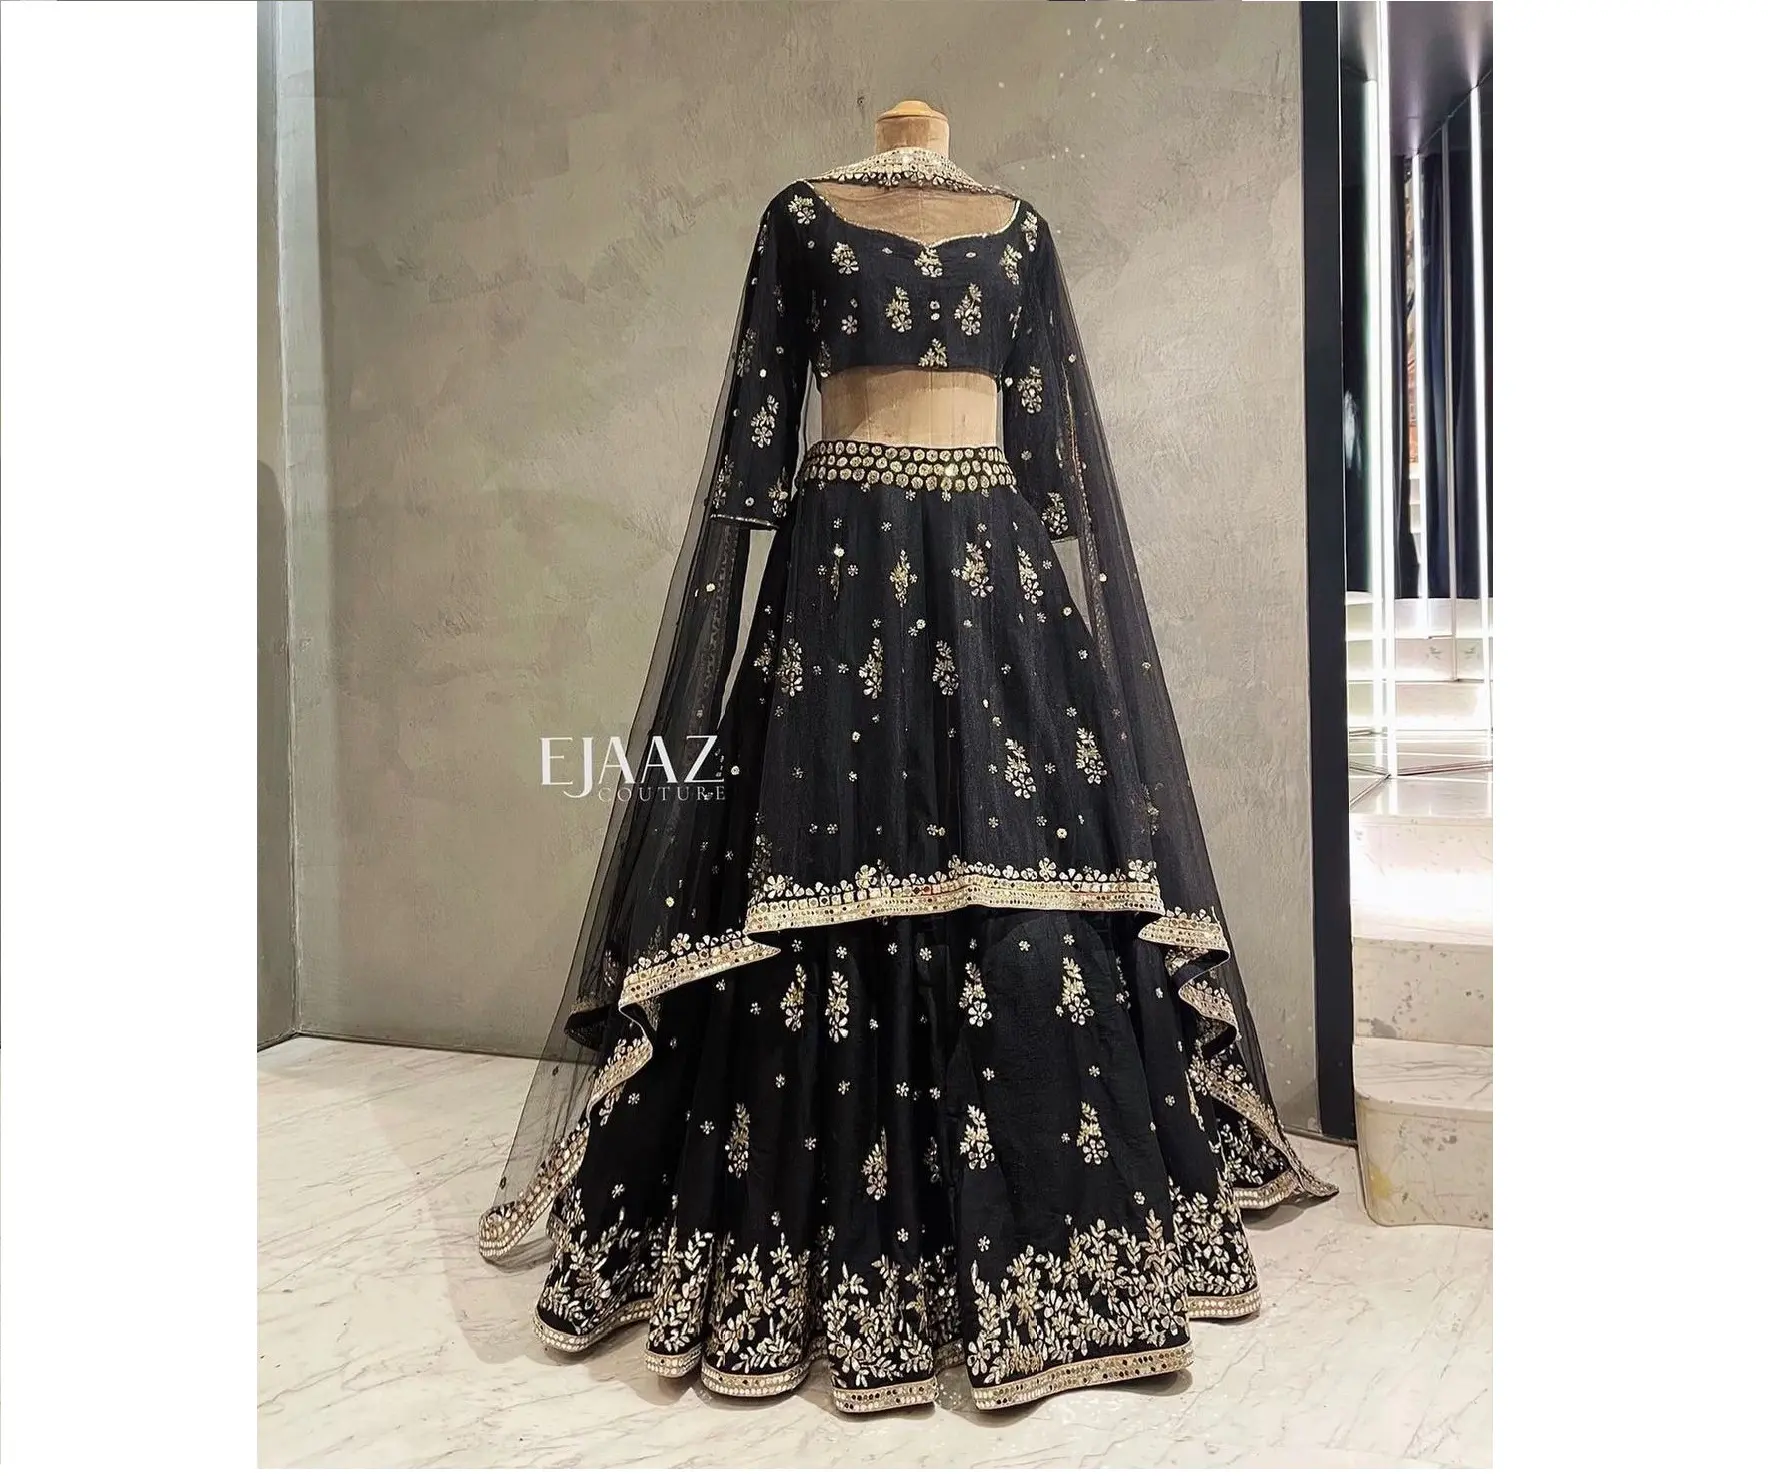 Bonito mais recente designer casamento e festa vestido preto slub seda zari & papel espelho de trabalho lehenga choli fabricante da índia